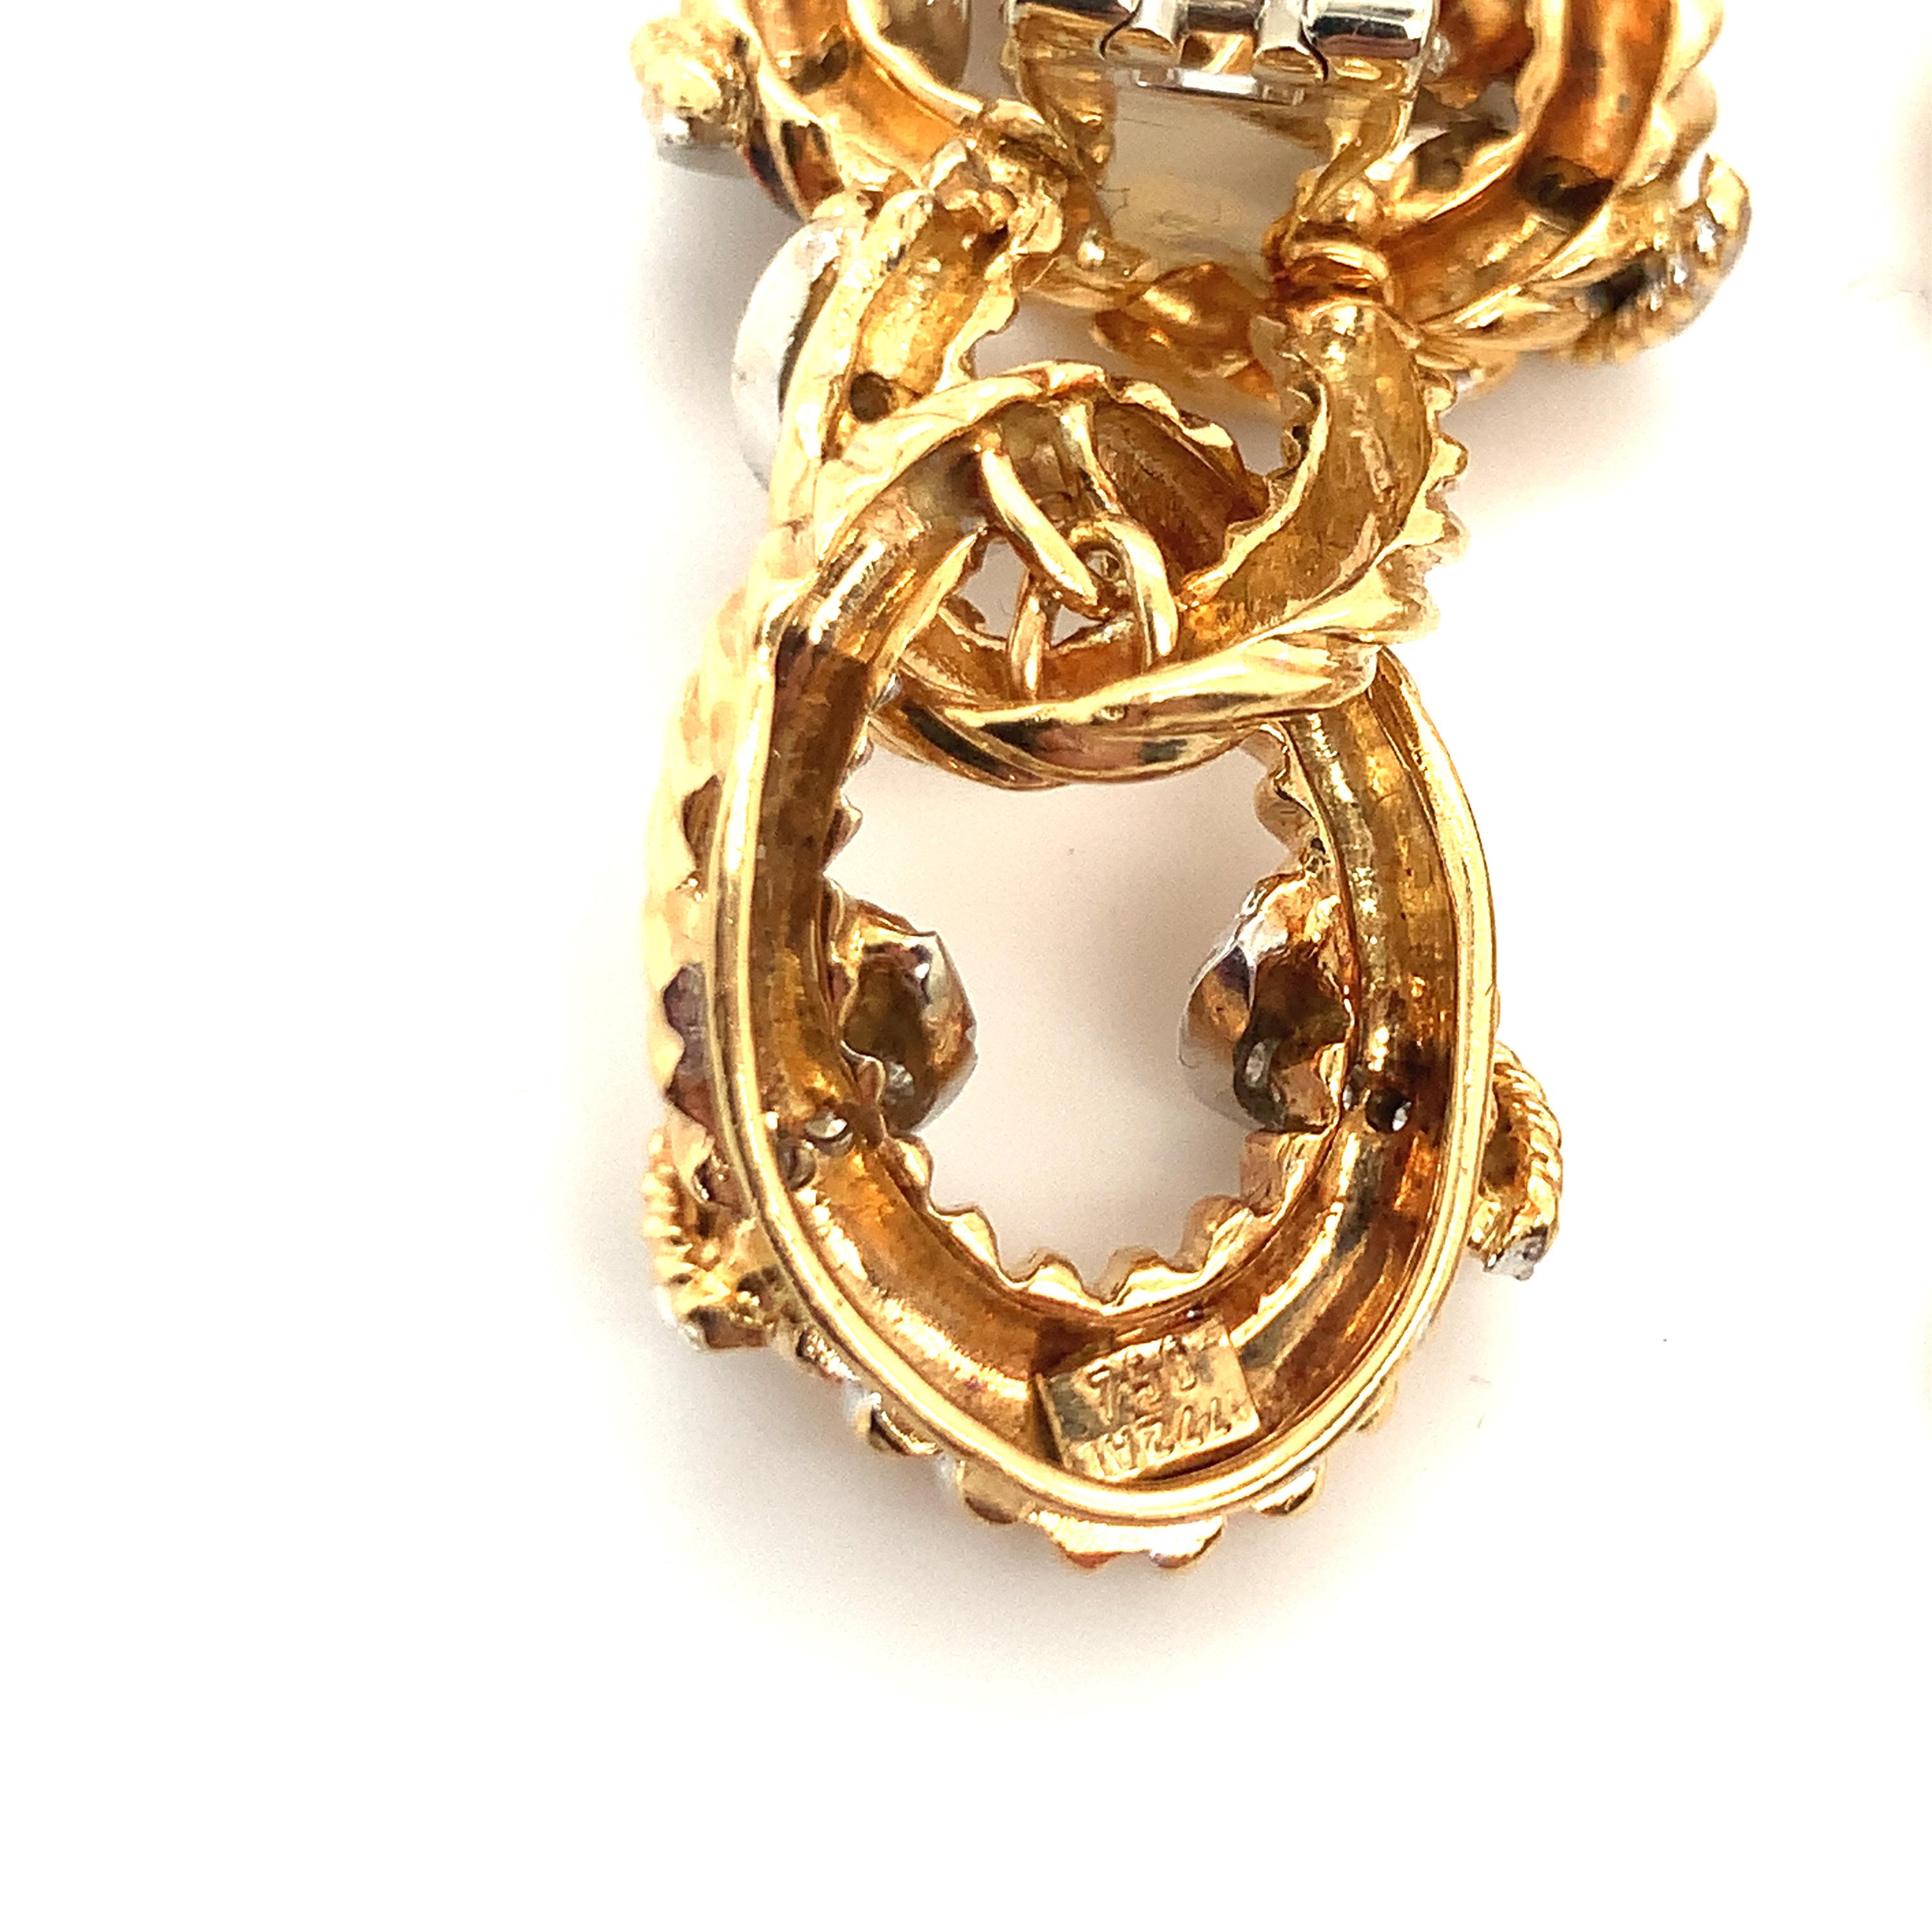 Ein Paar diamantene Ohrringe aus 18 Karat Gelbgold mit gerippter Goldverarbeitung und einem Knotenmuster an der Spitze, das 2 Zoll lang ist. Die Ohrringe sind mit 36 einzelnen Diamanten im Rundschliff von insgesamt 0,50 ct. mit der Farbe G und der